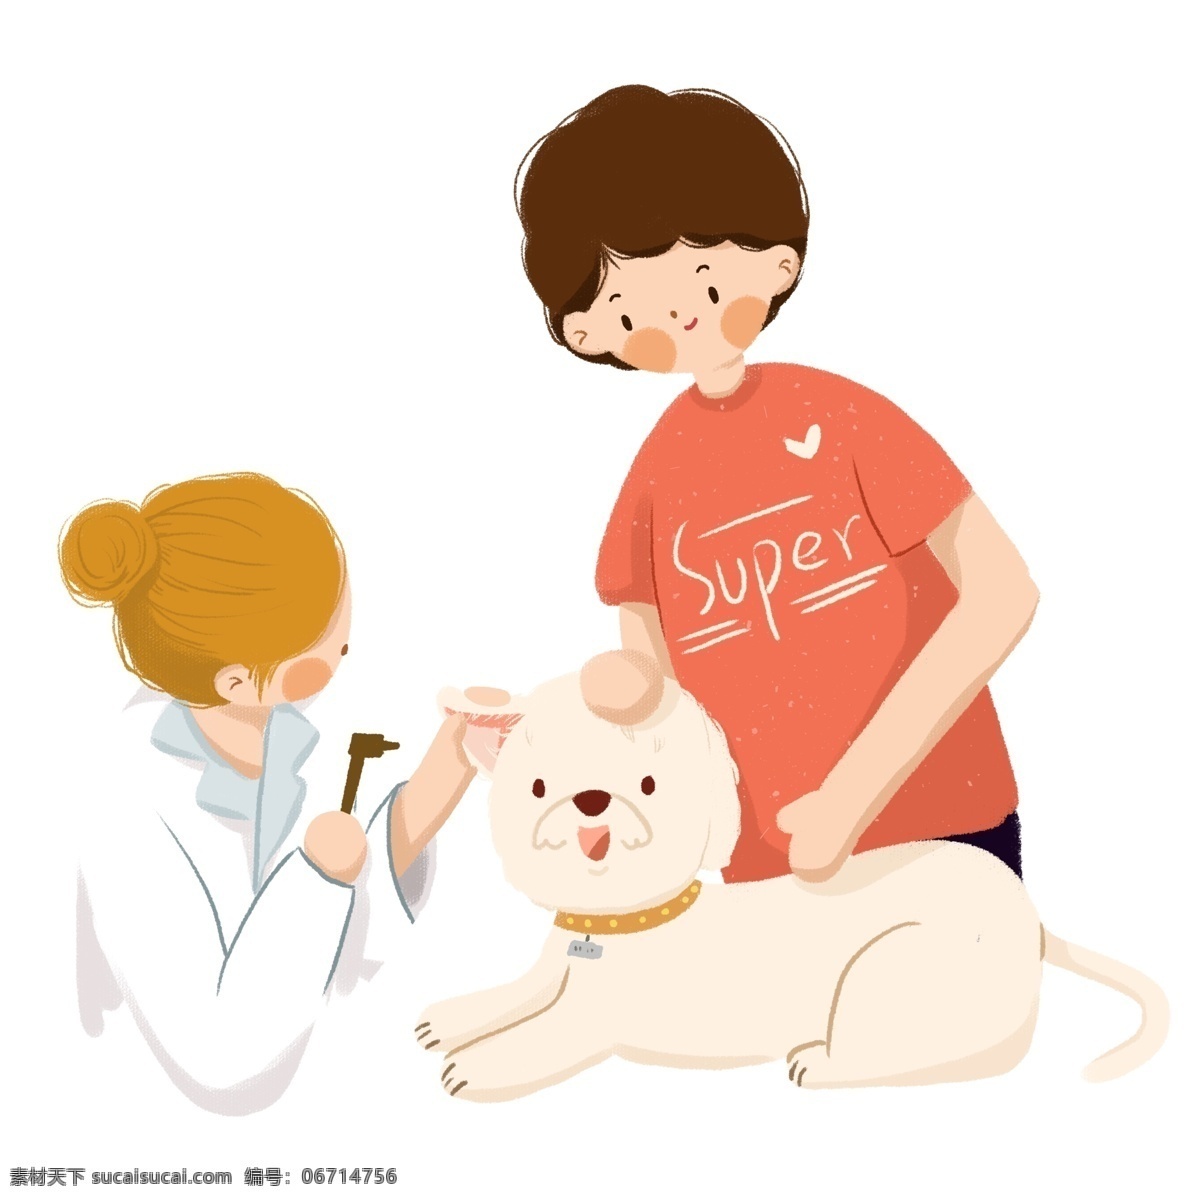 一个 医生 宠物 小狗 看病 免 抠 图 宠物医院 动物 小孩子 一个医生 免抠图 可爱的小狗